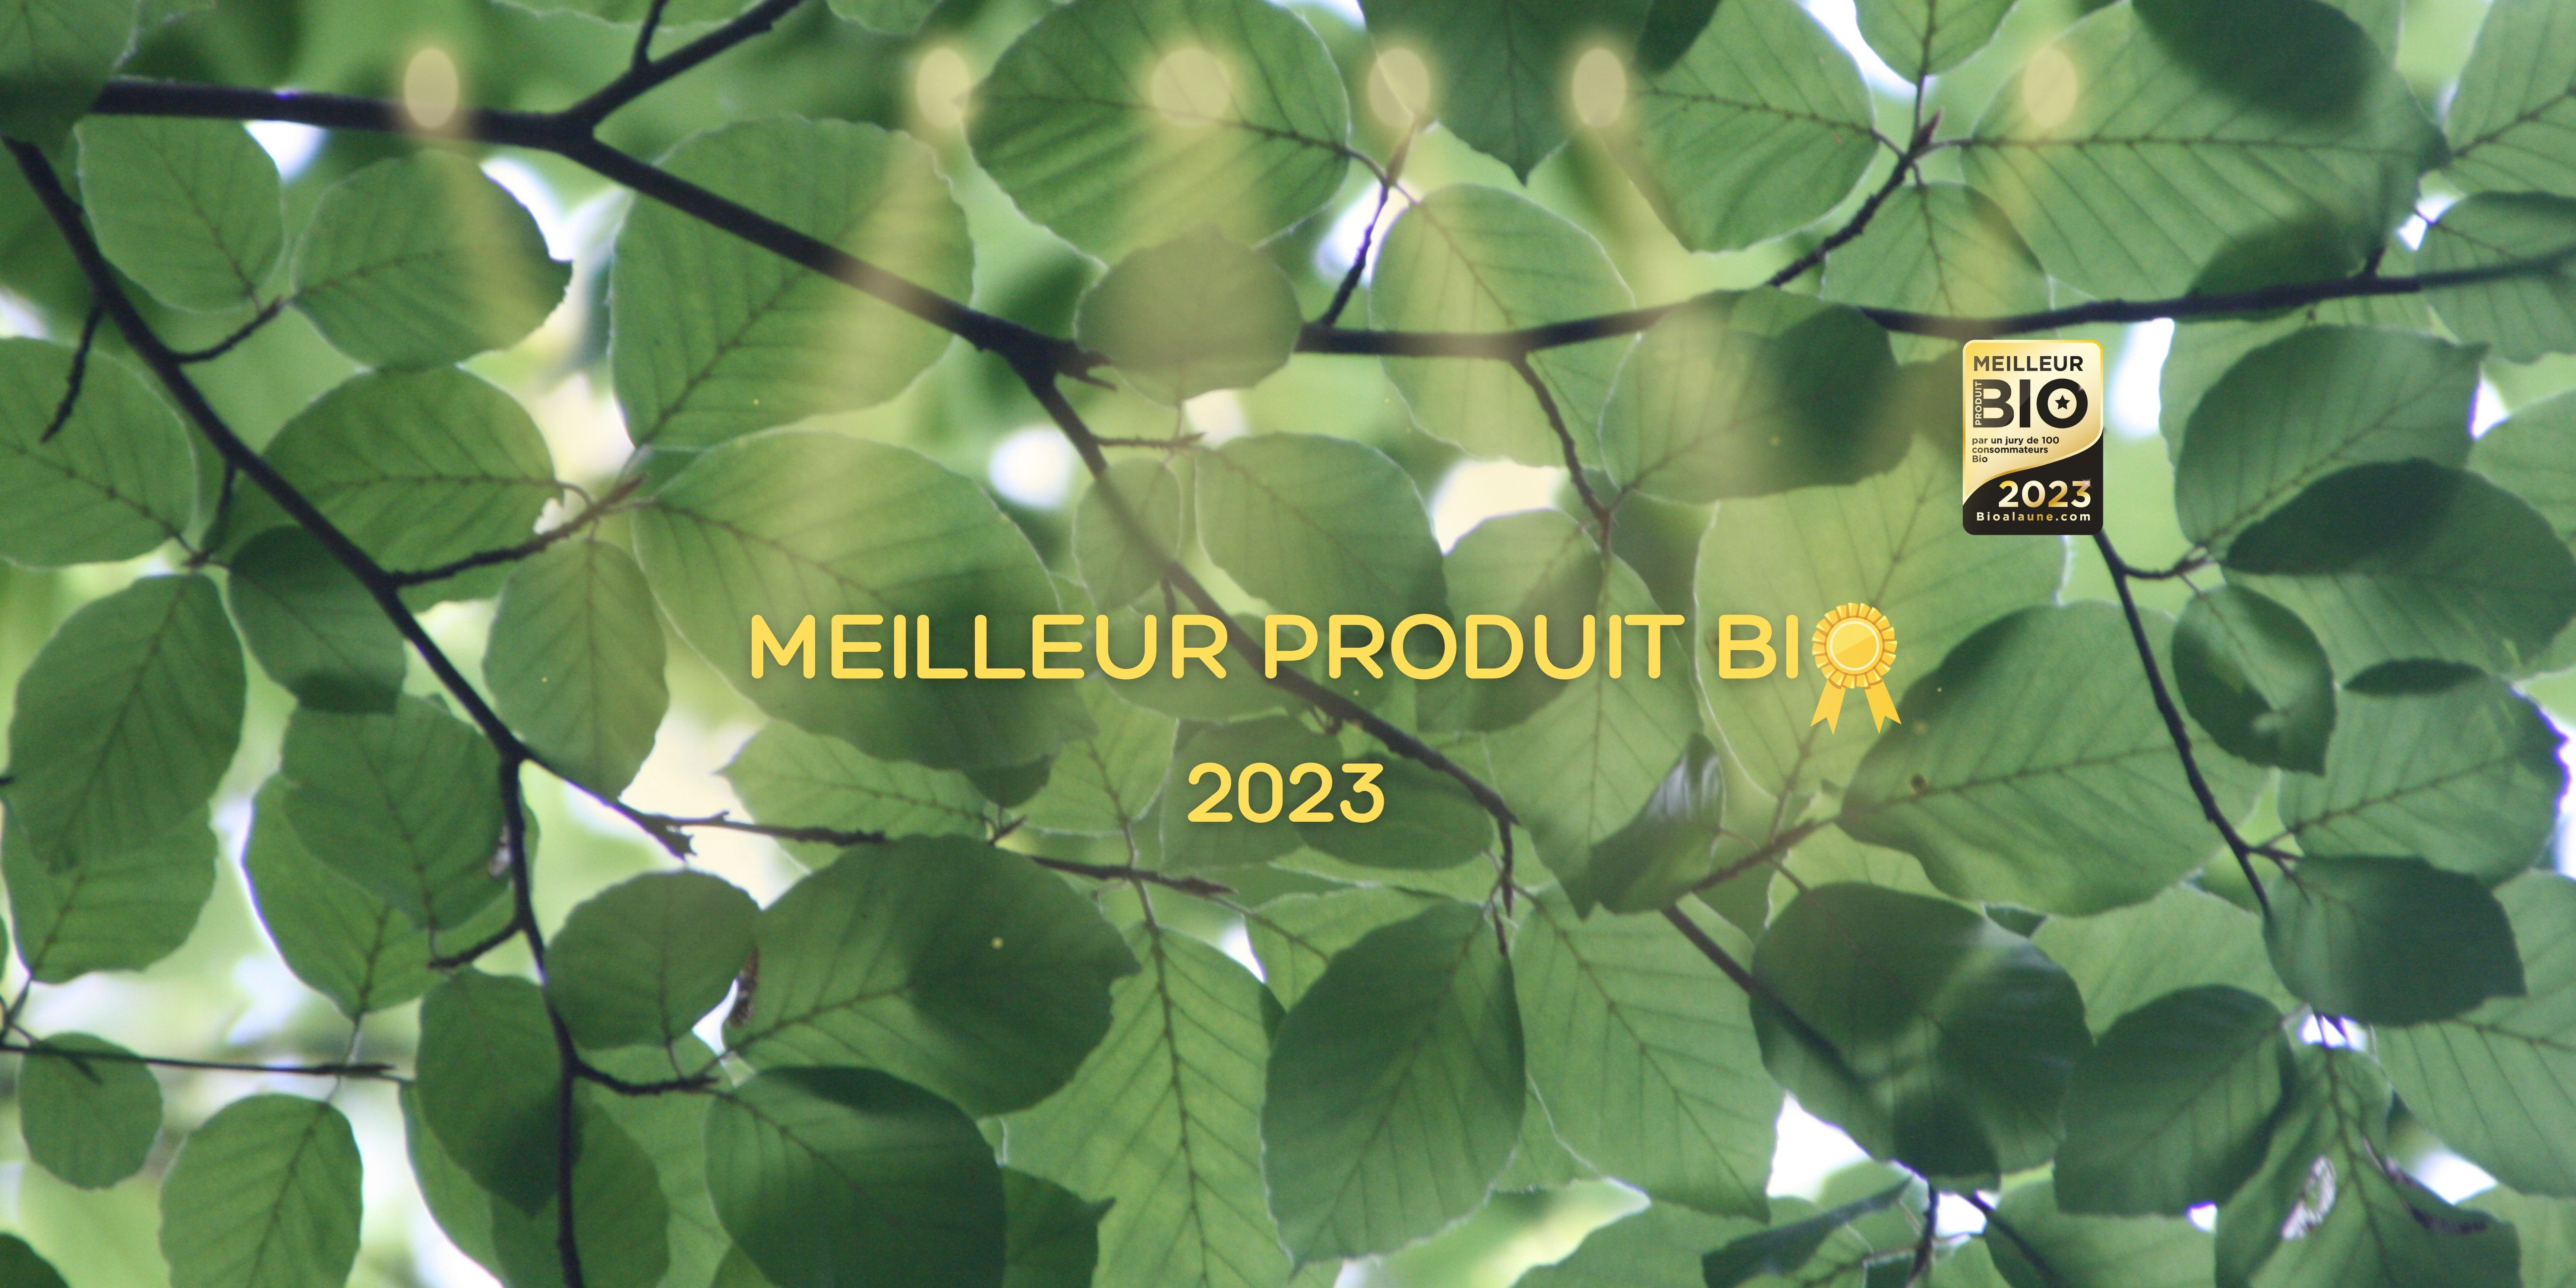 MEILLEUR PRODUIT BIO 2023 ! 